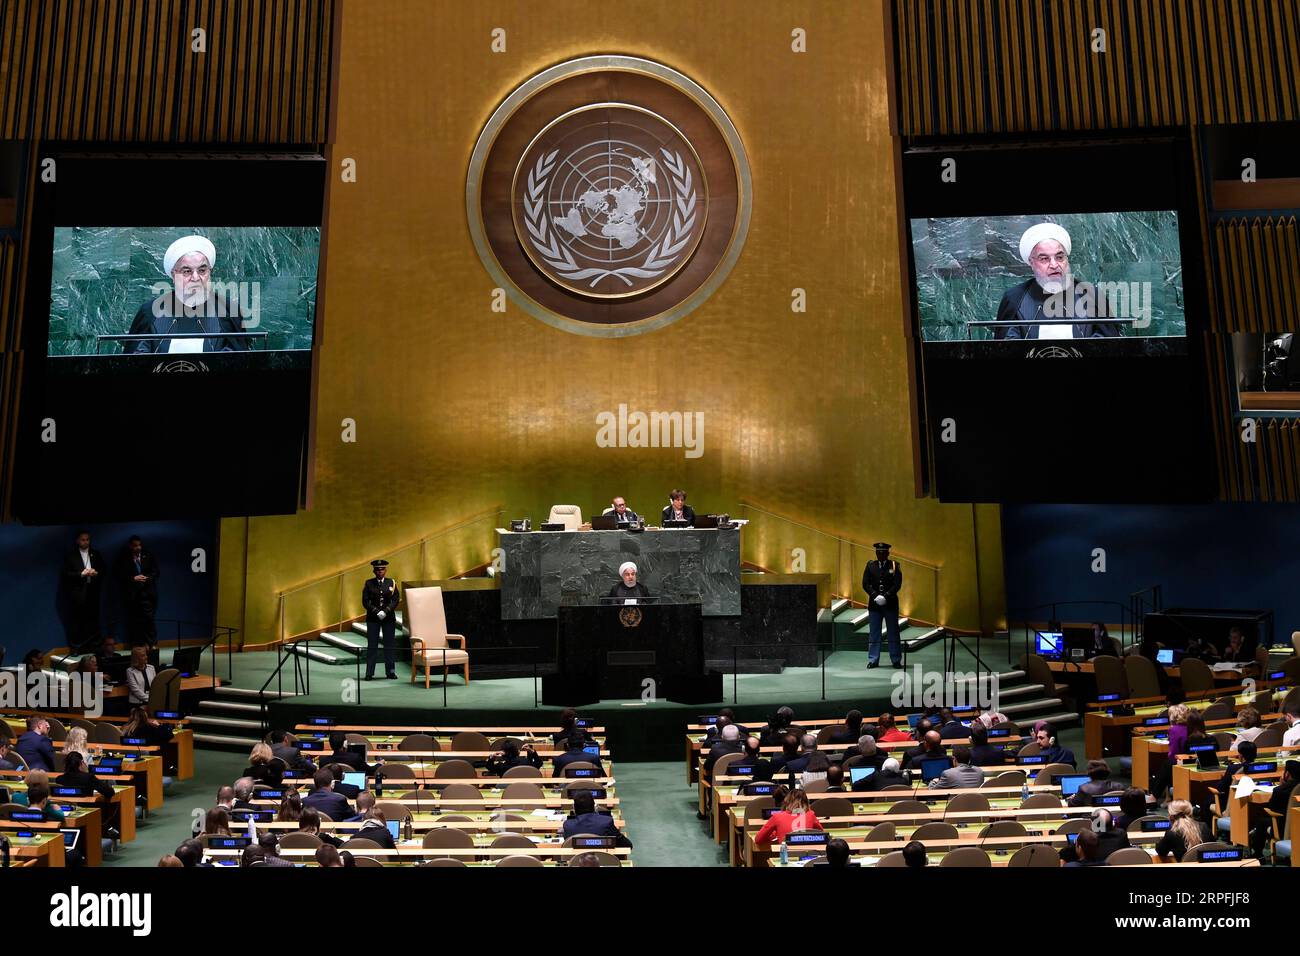 190925 -- NATIONS UNIES, 25 septembre 2019 -- le président iranien Hassan Rouhani C prononce un discours lors du débat général de la 74e session de l'Assemblée générale des Nations Unies au siège des Nations Unies à New York, le 25 septembre 2019. Rouhani mercredi a exclu les négociations avec les États-Unis à moins que ces derniers ne lèvent d’abord les sanctions contre son pays. ONU-ASSEMBLÉE GÉNÉRALE-DÉBAT GÉNÉRAL-IRAN LIUXJIE PUBLICATIONXNOTXINXCHN Banque D'Images